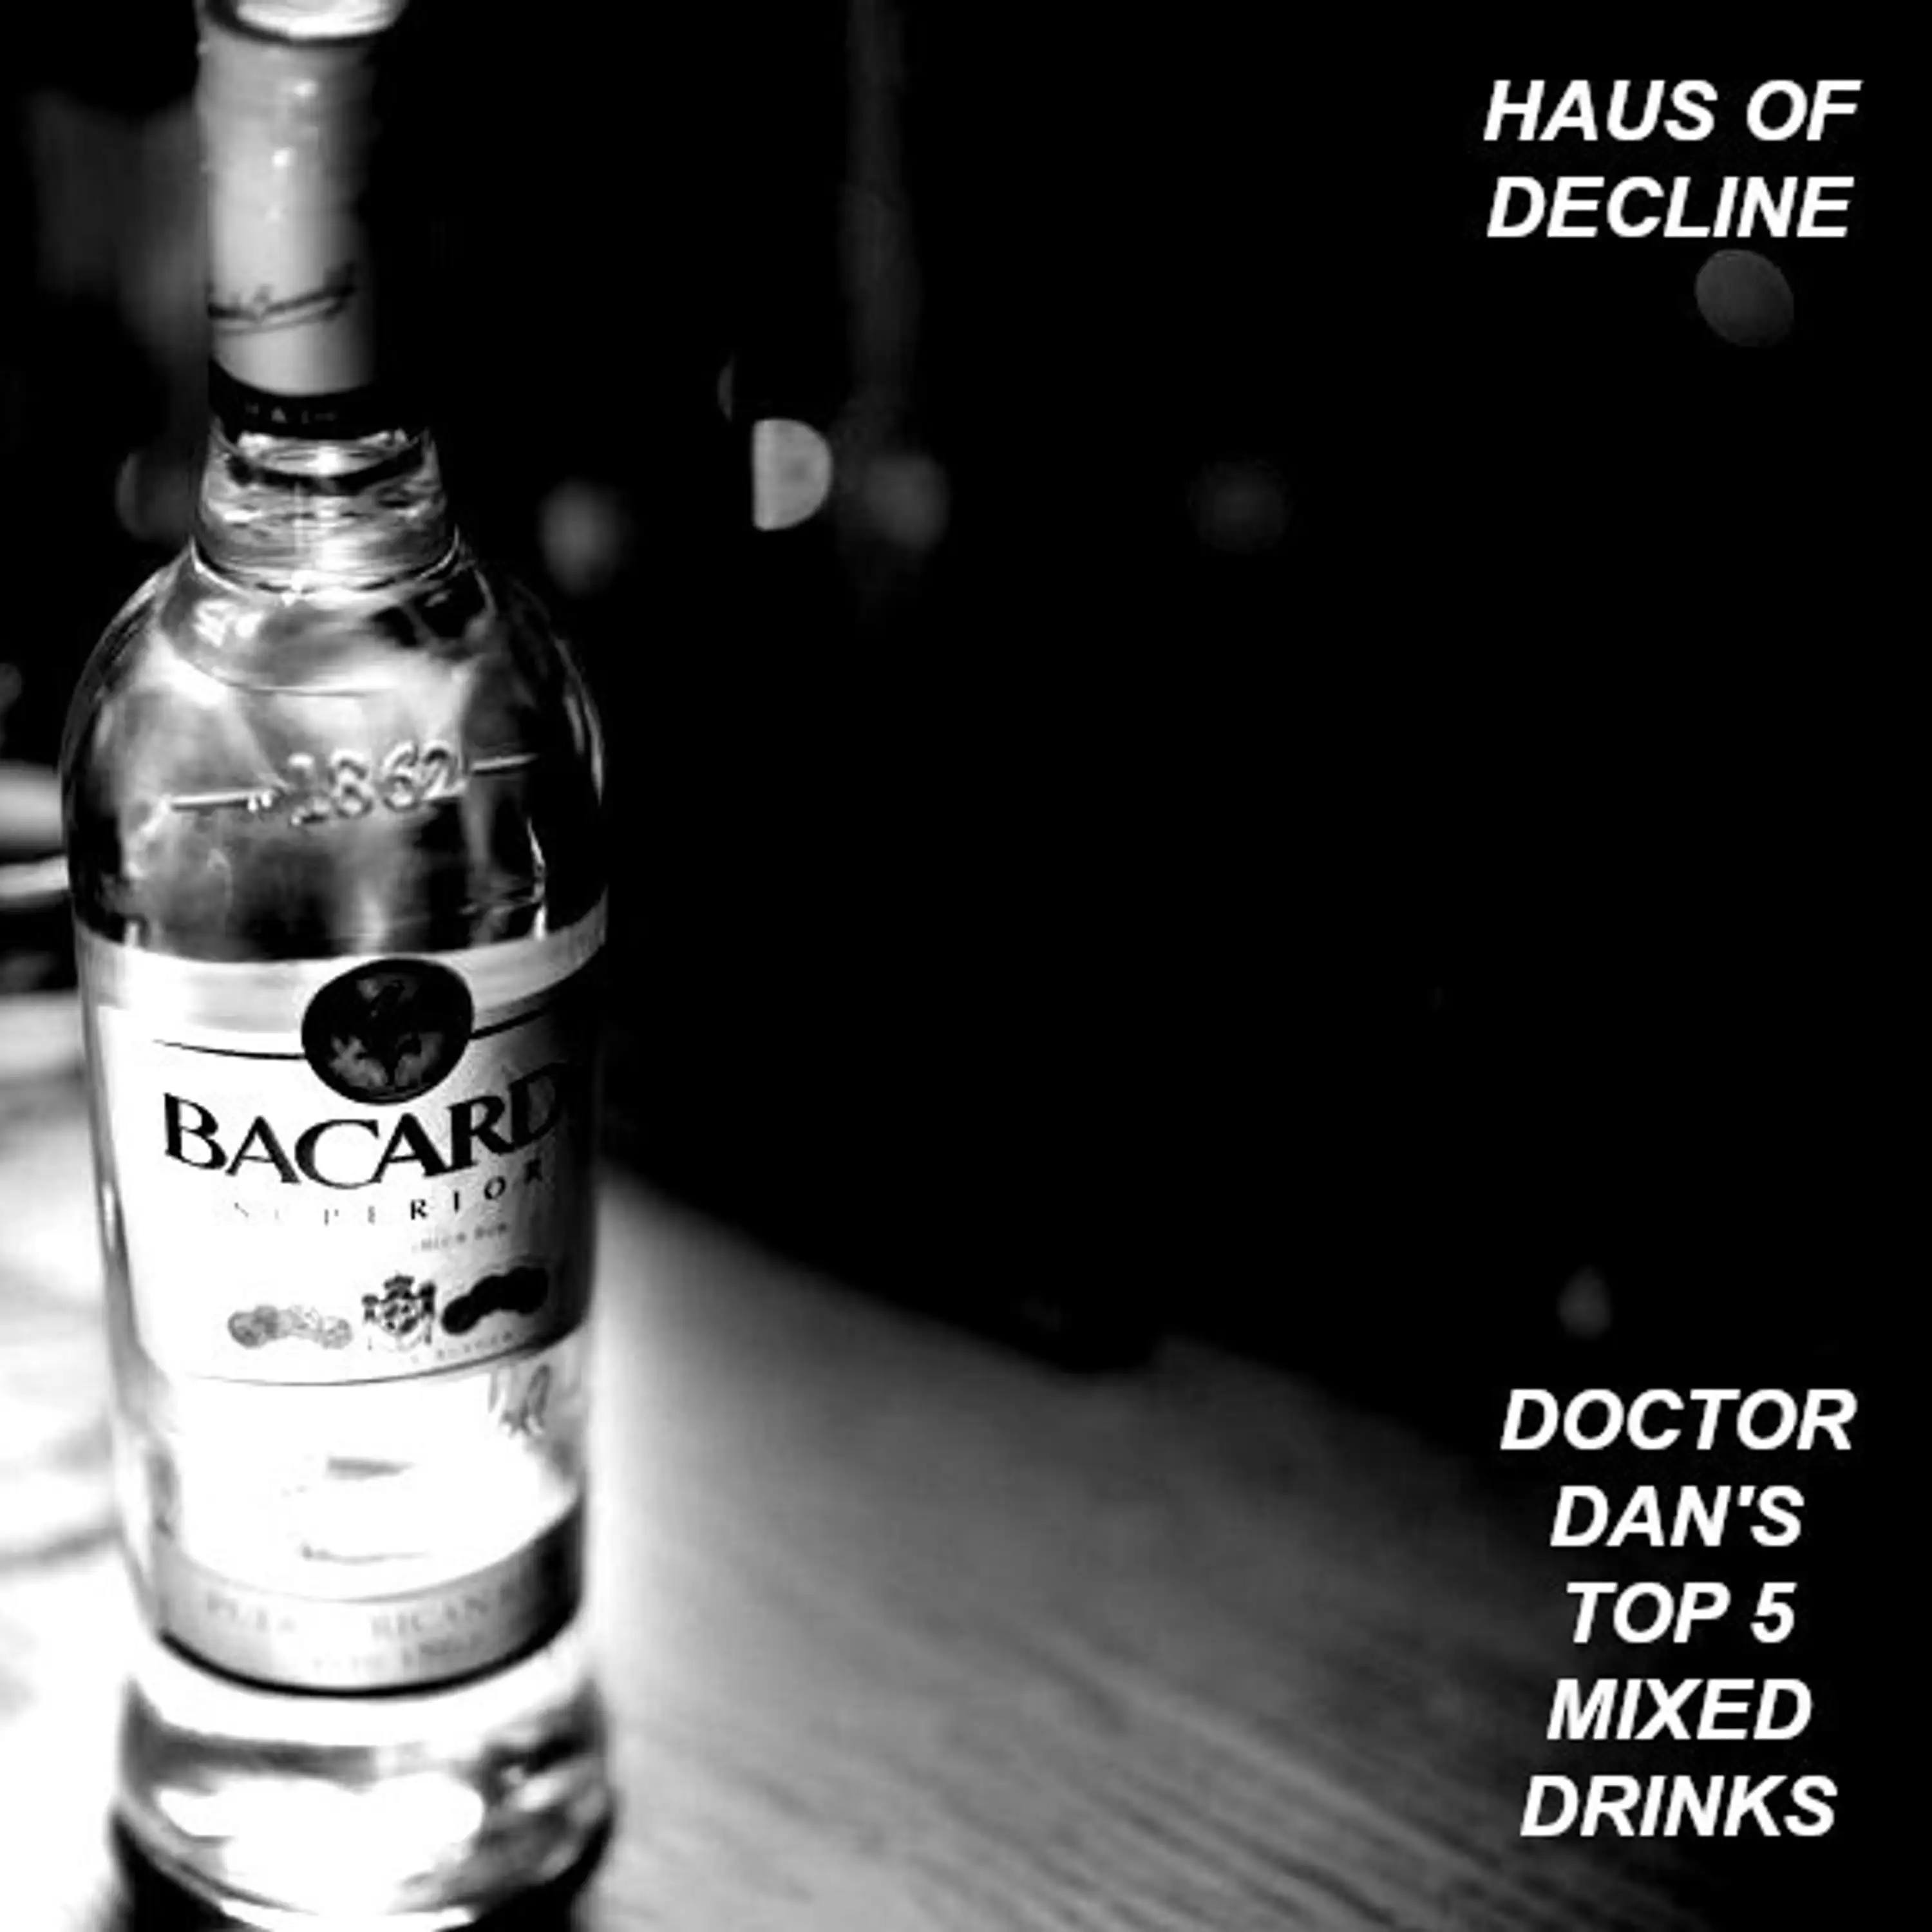 Doctor Dan's Top 5 Mixed Drinks